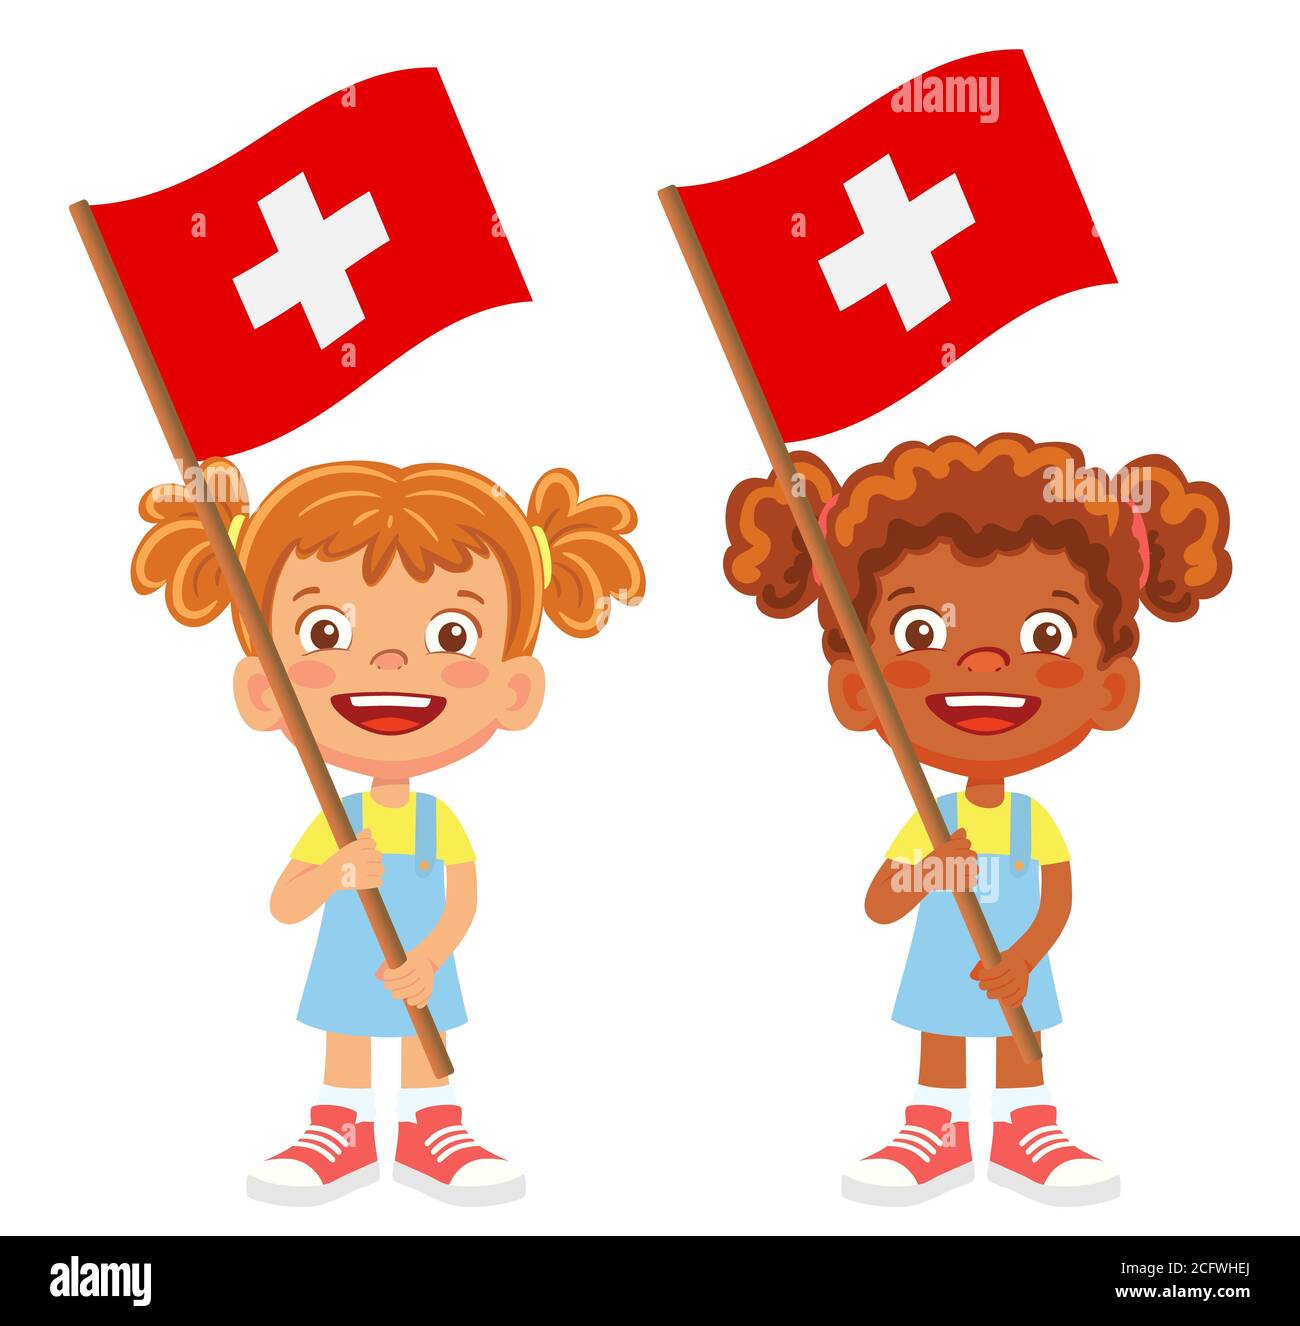 Schweiz Flagge in der Hand. Kennzeichen für Kinder. Nationalflagge der  Schweiz Stockfotografie - Alamy